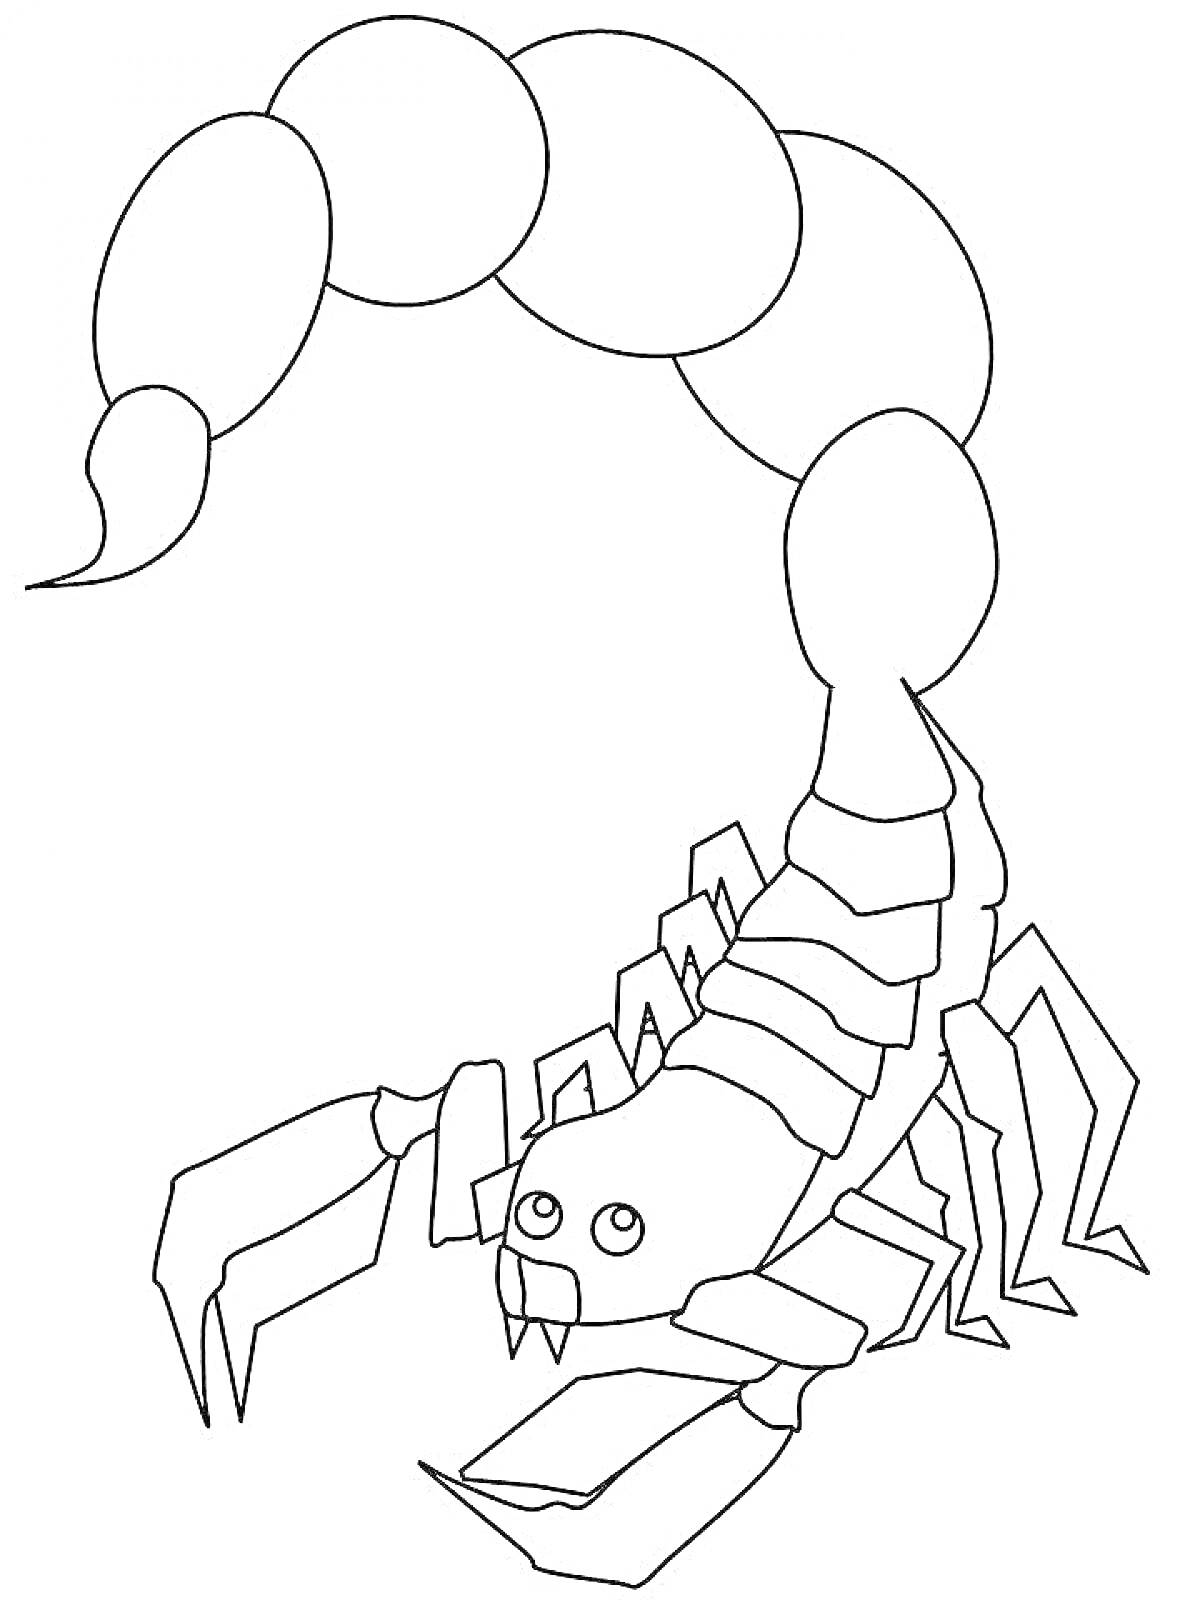 Раскраска Скорпион с поднятым хвостом